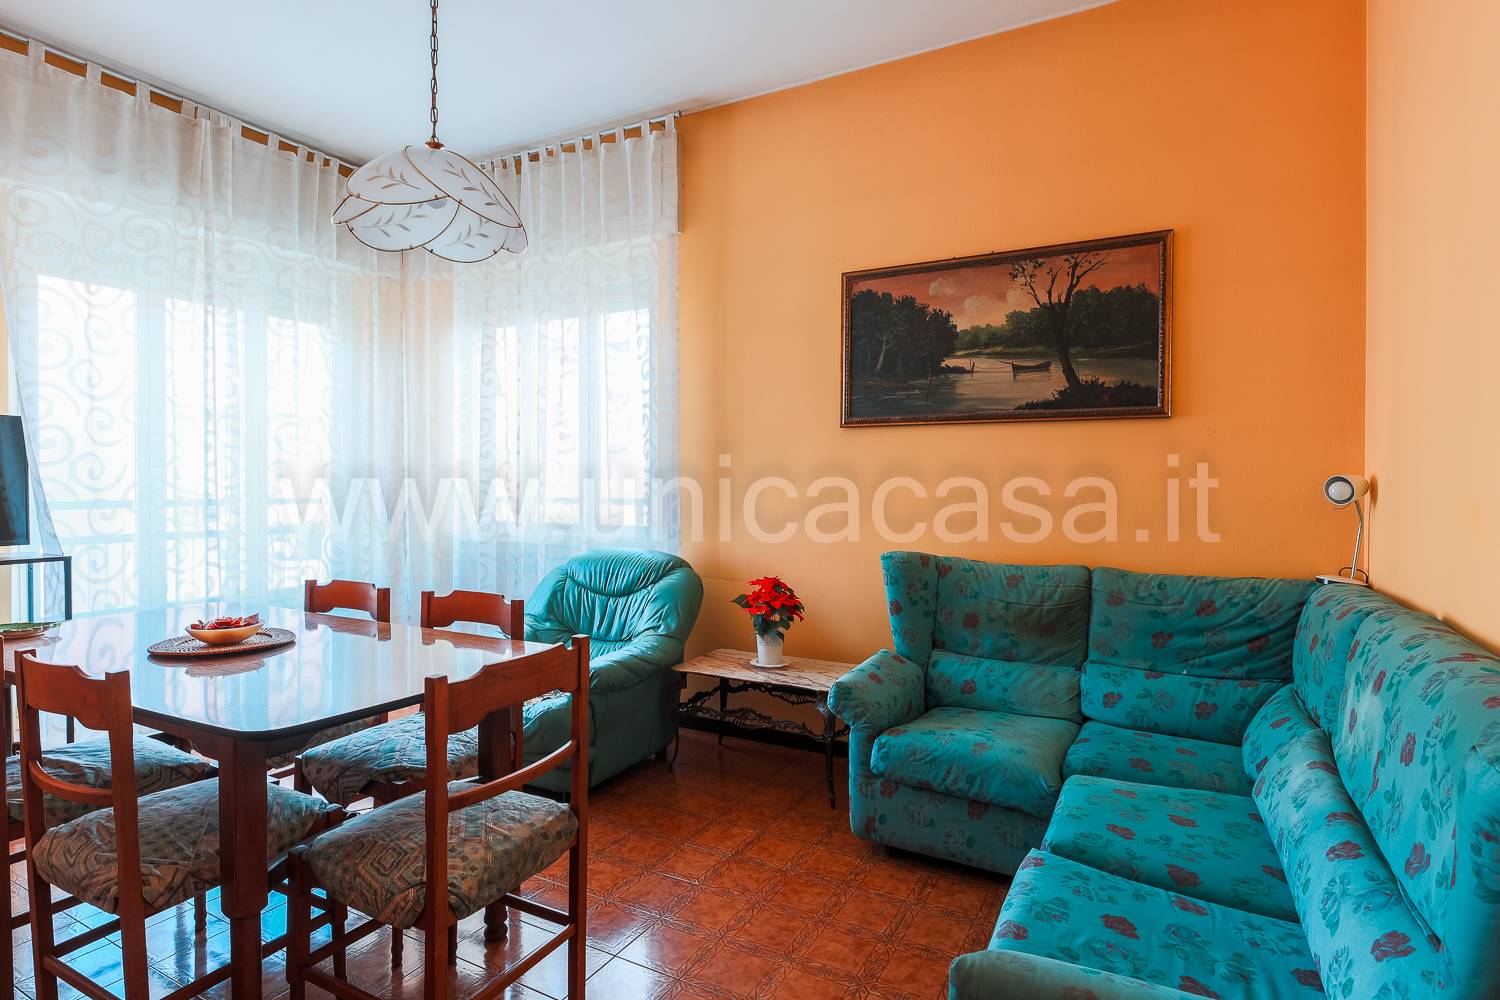 Appartamento in vendita a Inzago, 3 locali, prezzo € 140.000 | PortaleAgenzieImmobiliari.it